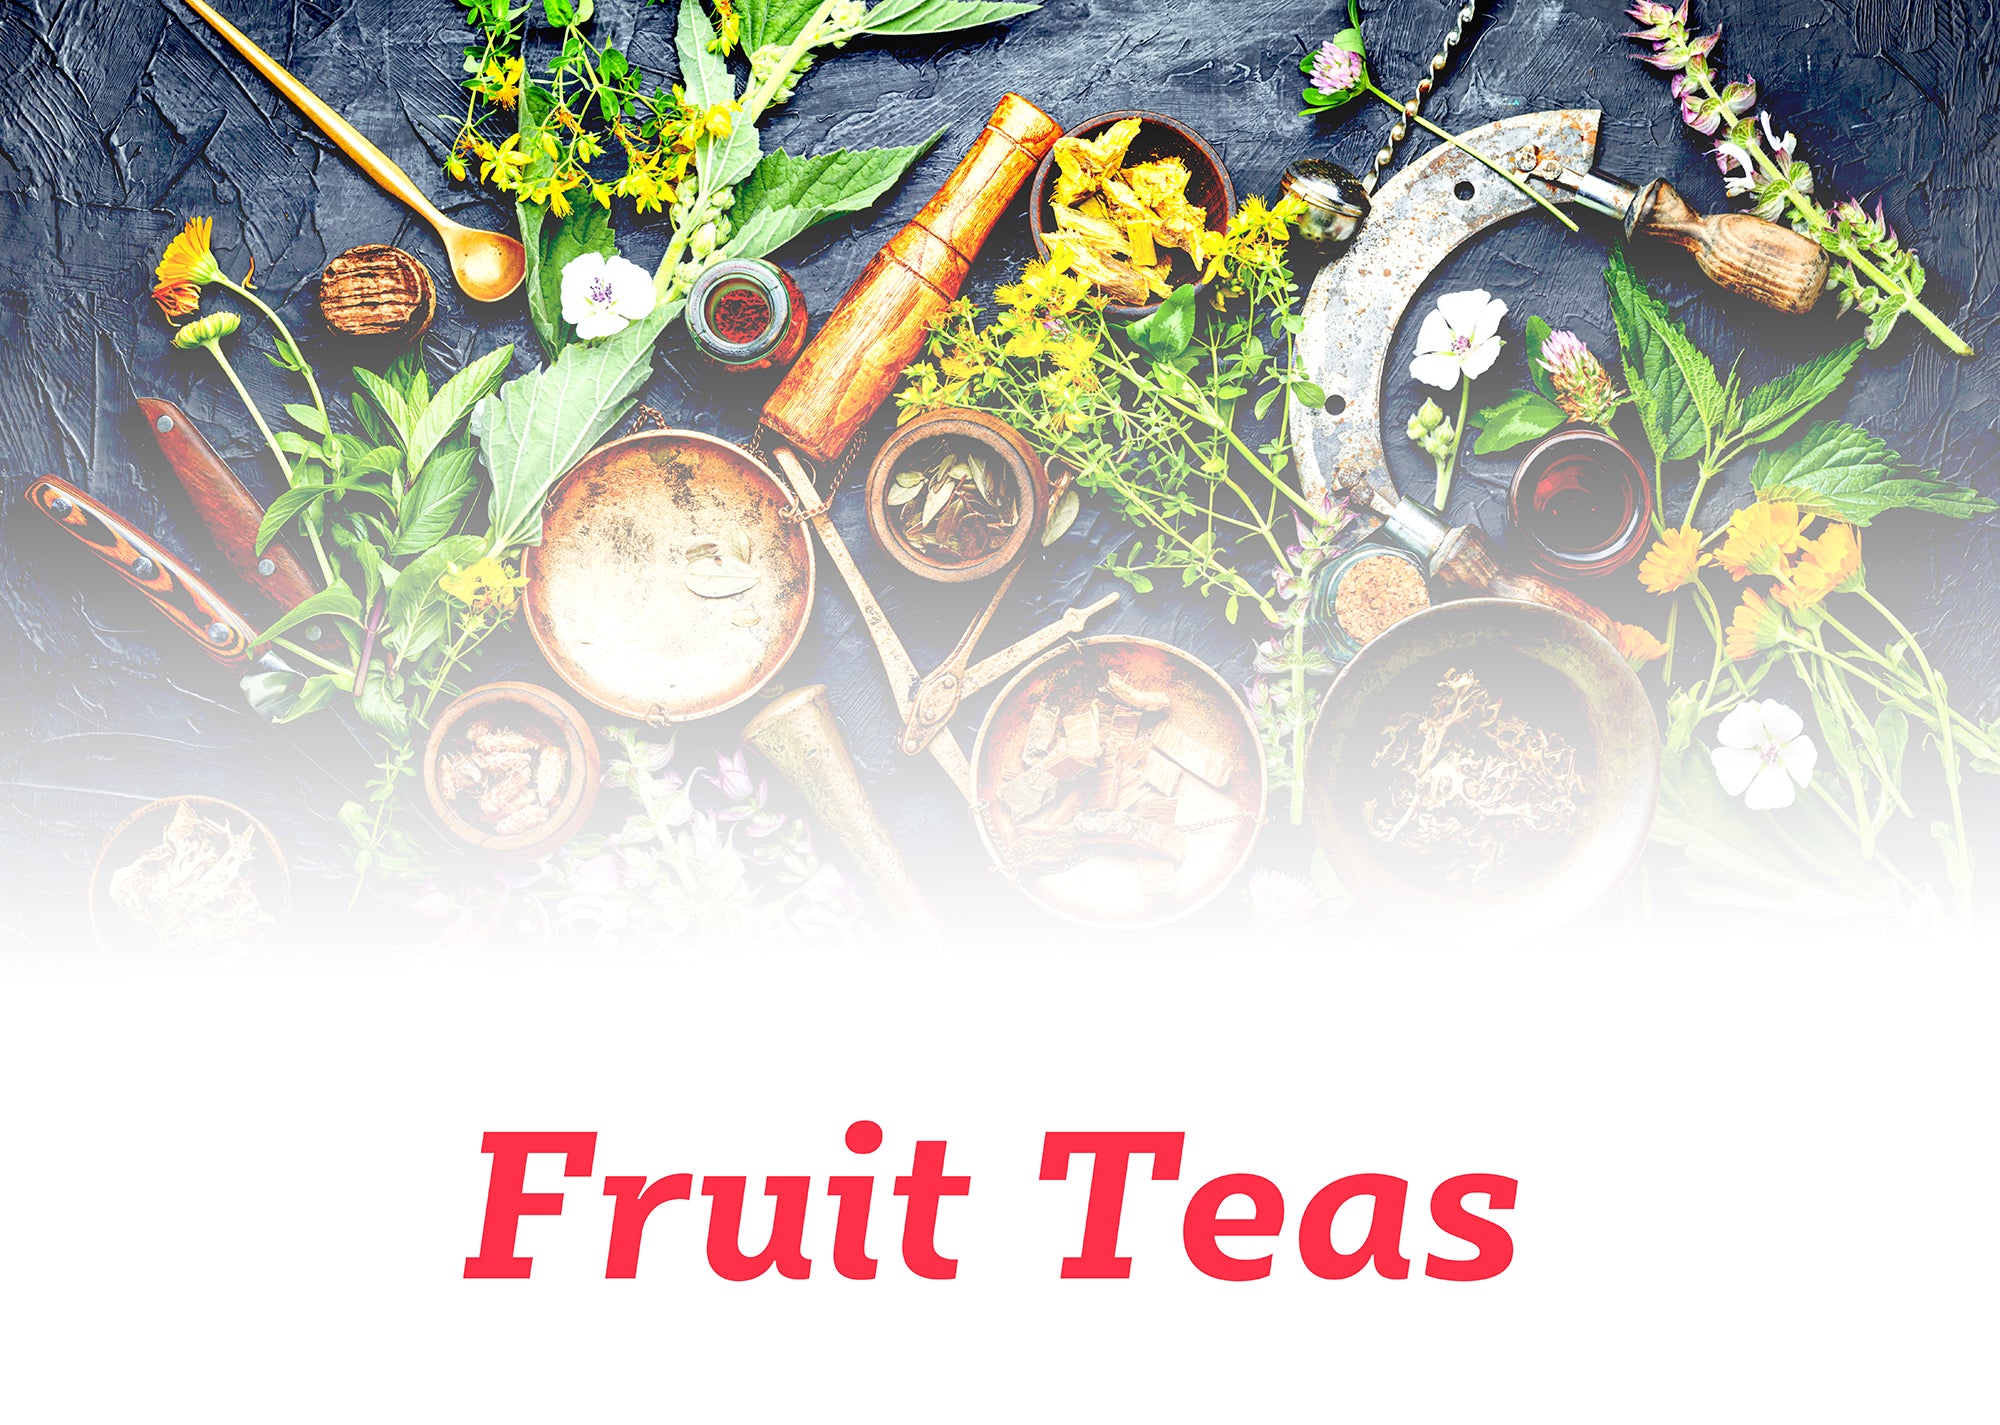 Fruits Teas